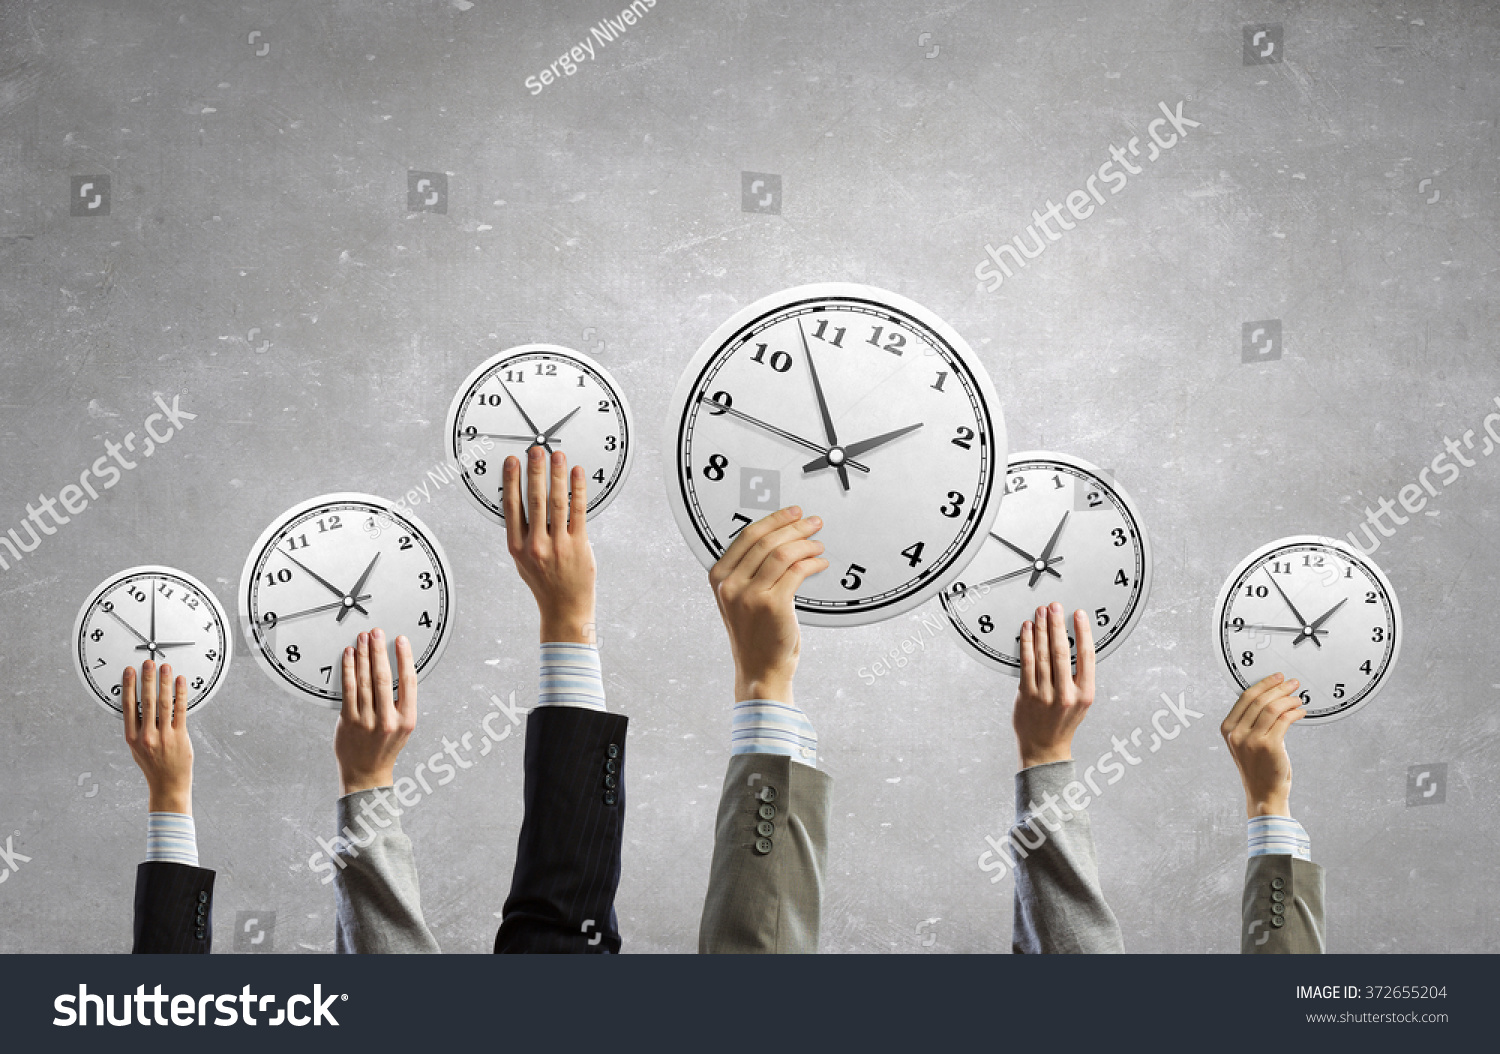 Выберем время для встречи. Тайм-менеджмент. Умение планировать и управлять временем. Тренинг управление временем. Корпоративный тайм-менеджмент.